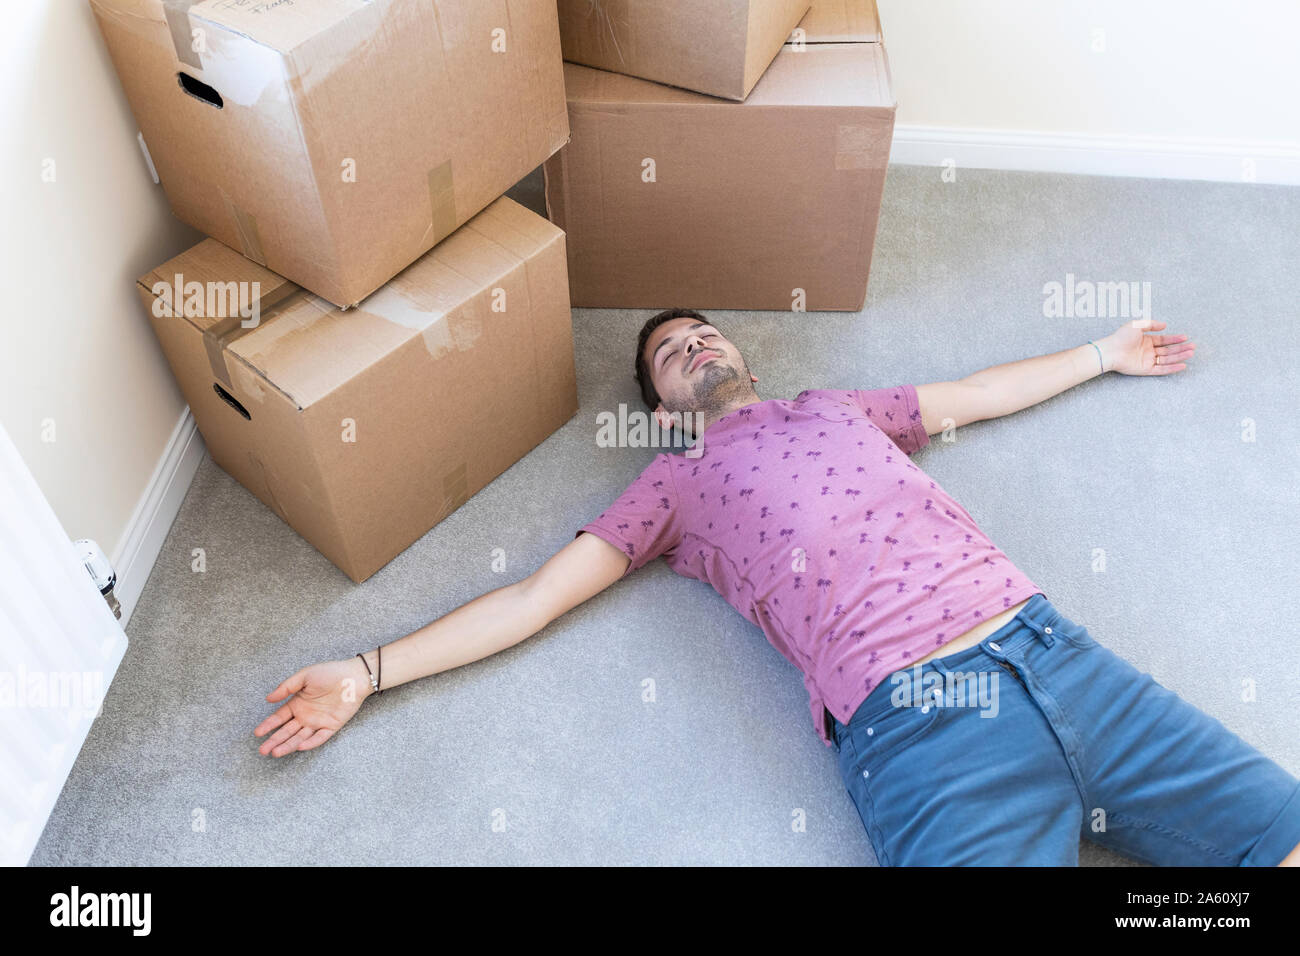 Stanco uomo disteso sul pavimento moquette nella nuova casa Foto Stock